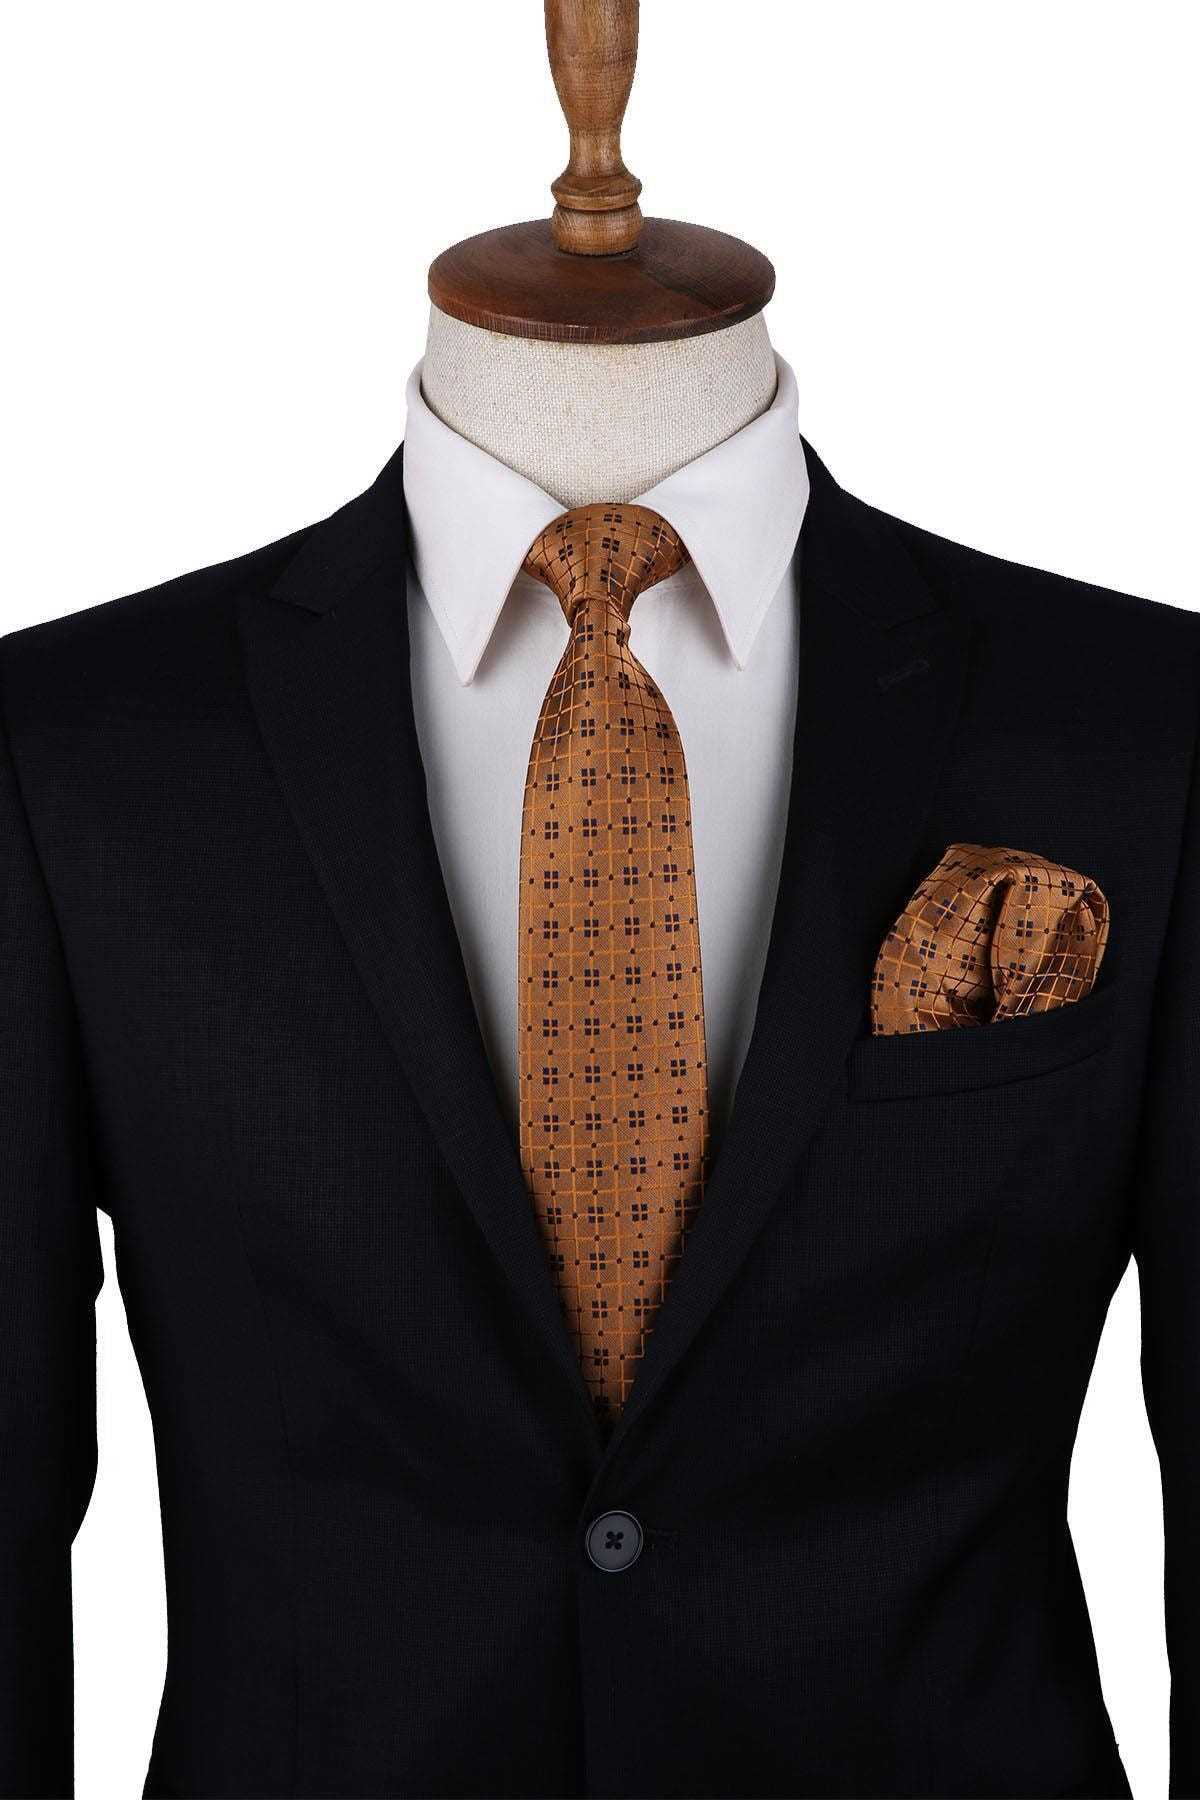 کراوات مردانه ساده شیک برند Kravatkolik رنگ زرشکی ty58301695